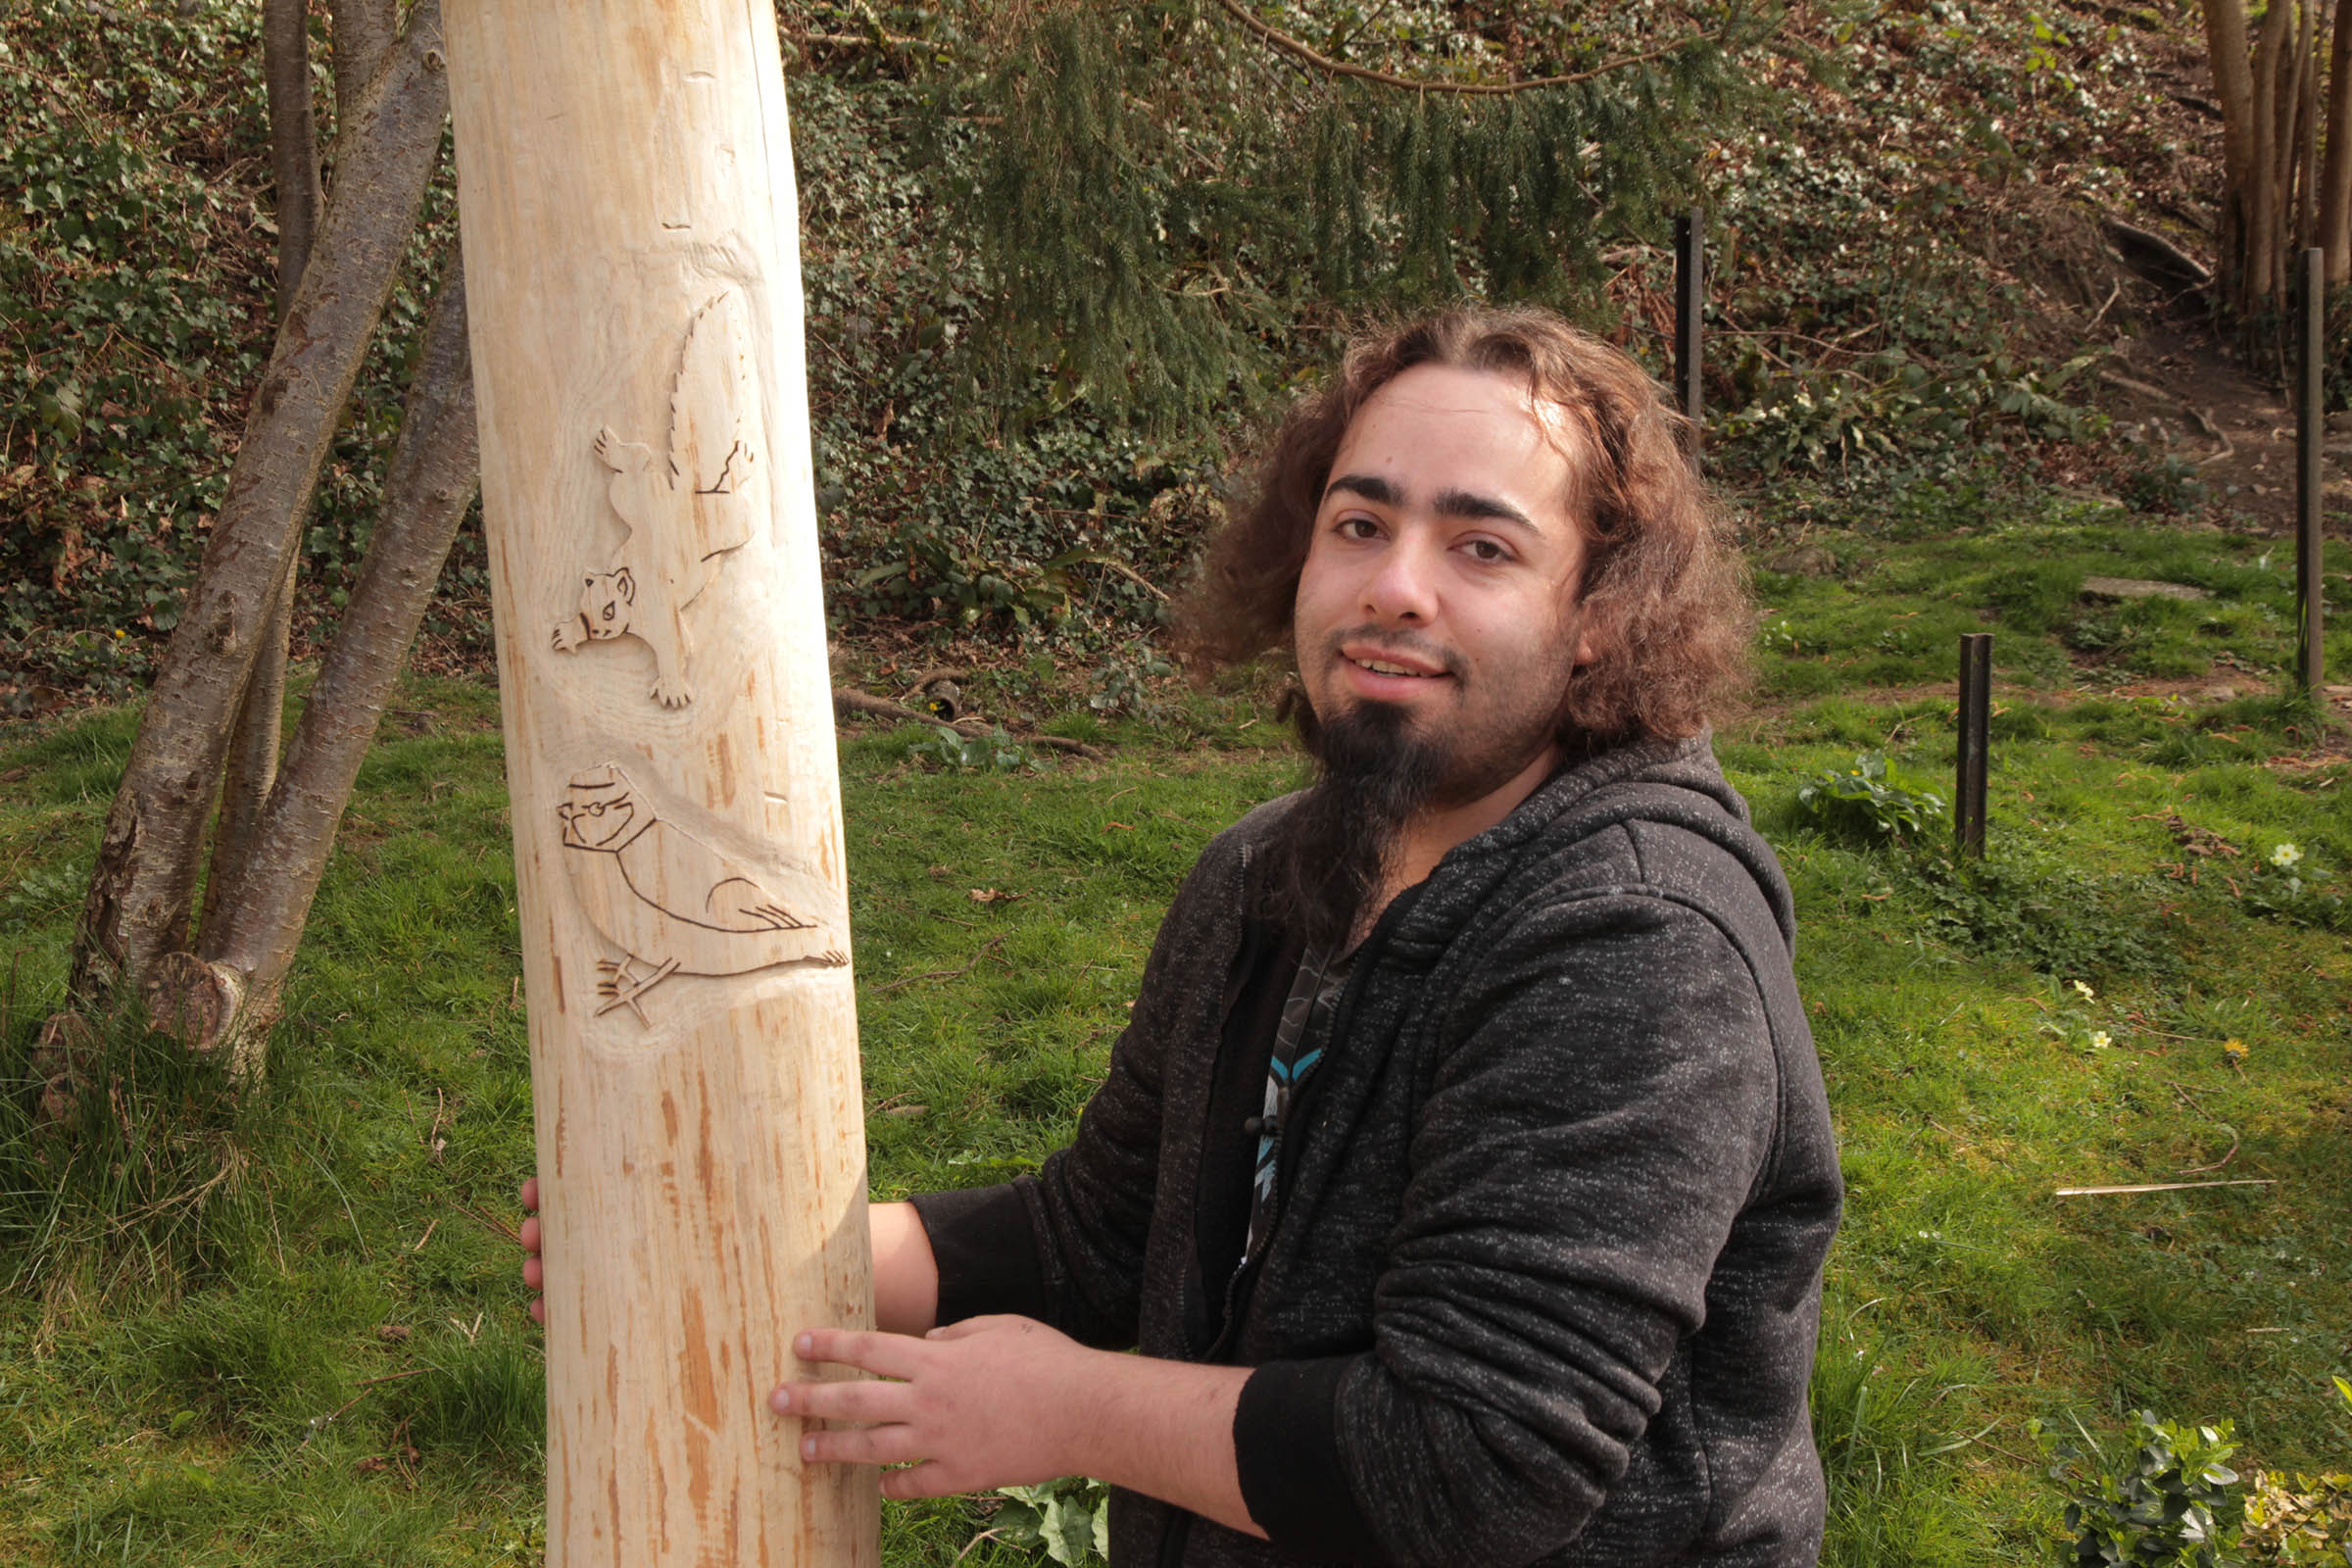 Kyeron holding a totem pole he carved